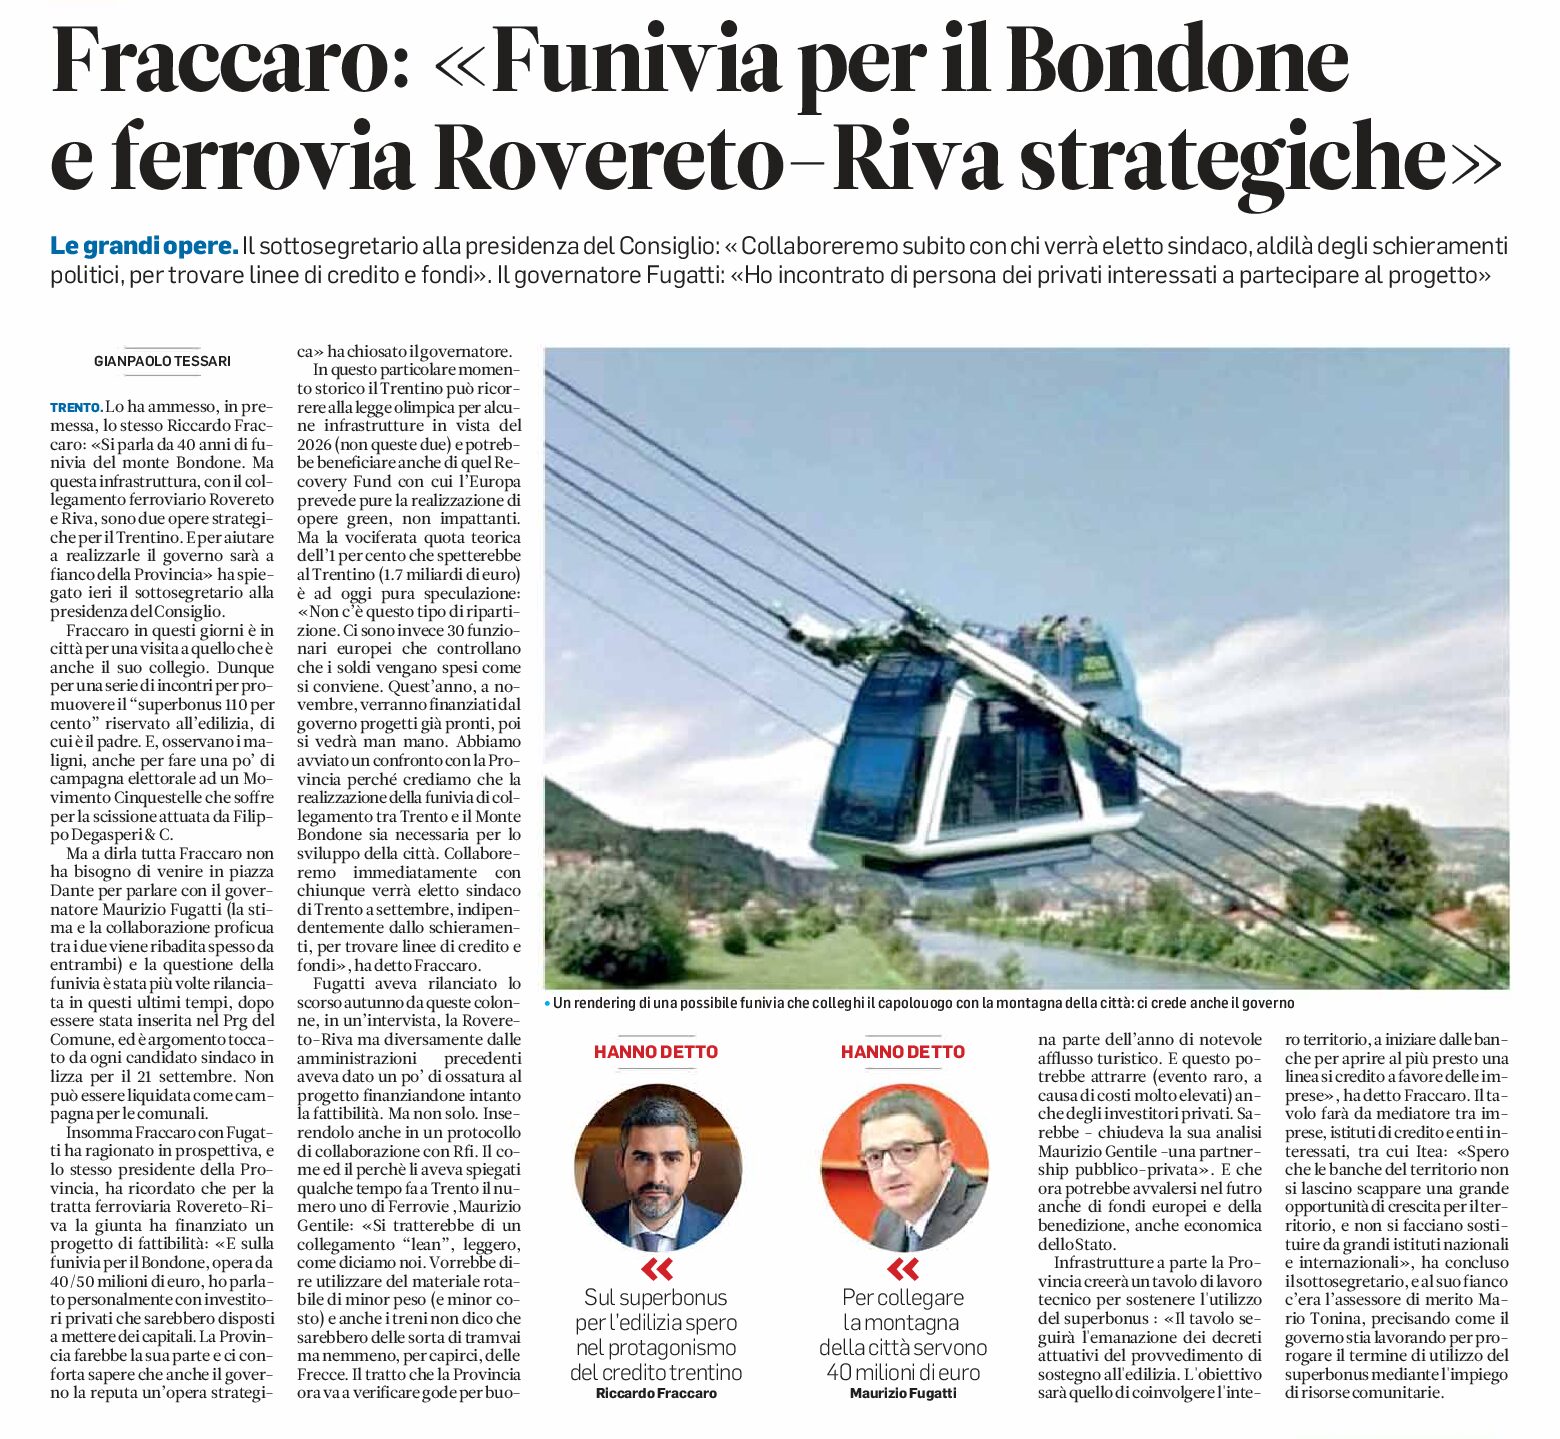 Fraccaro “funivia per il Bondone e ferrovia Rovereto-Riva, 2 opere strategiche per il Trentino”